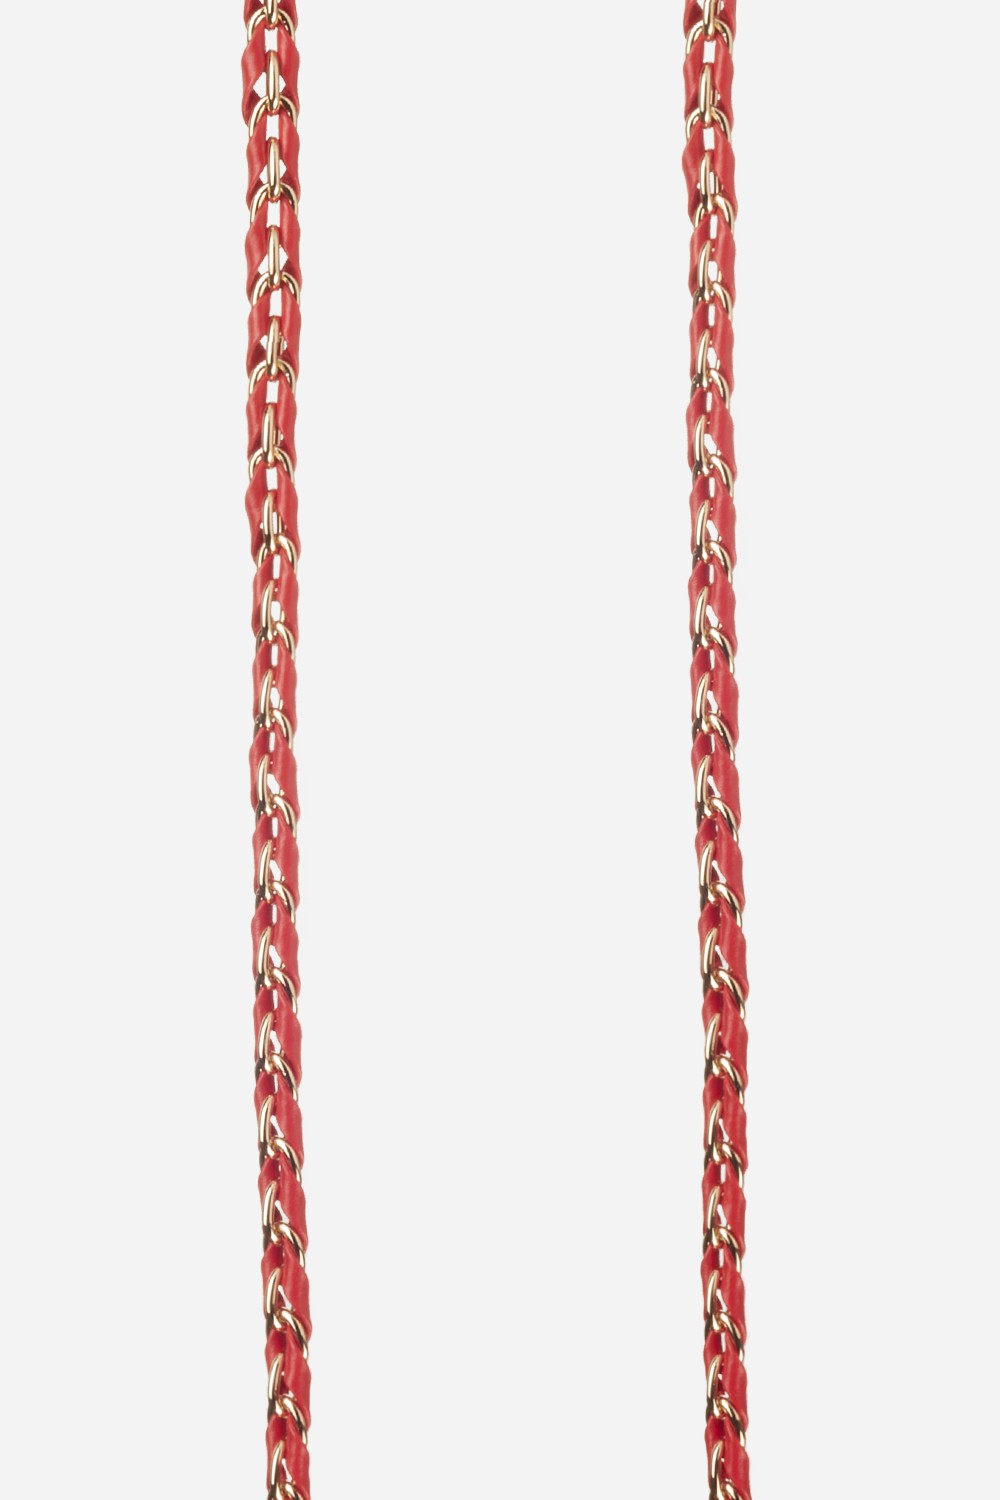 Chaine Longue Lou Rouge 120 cm